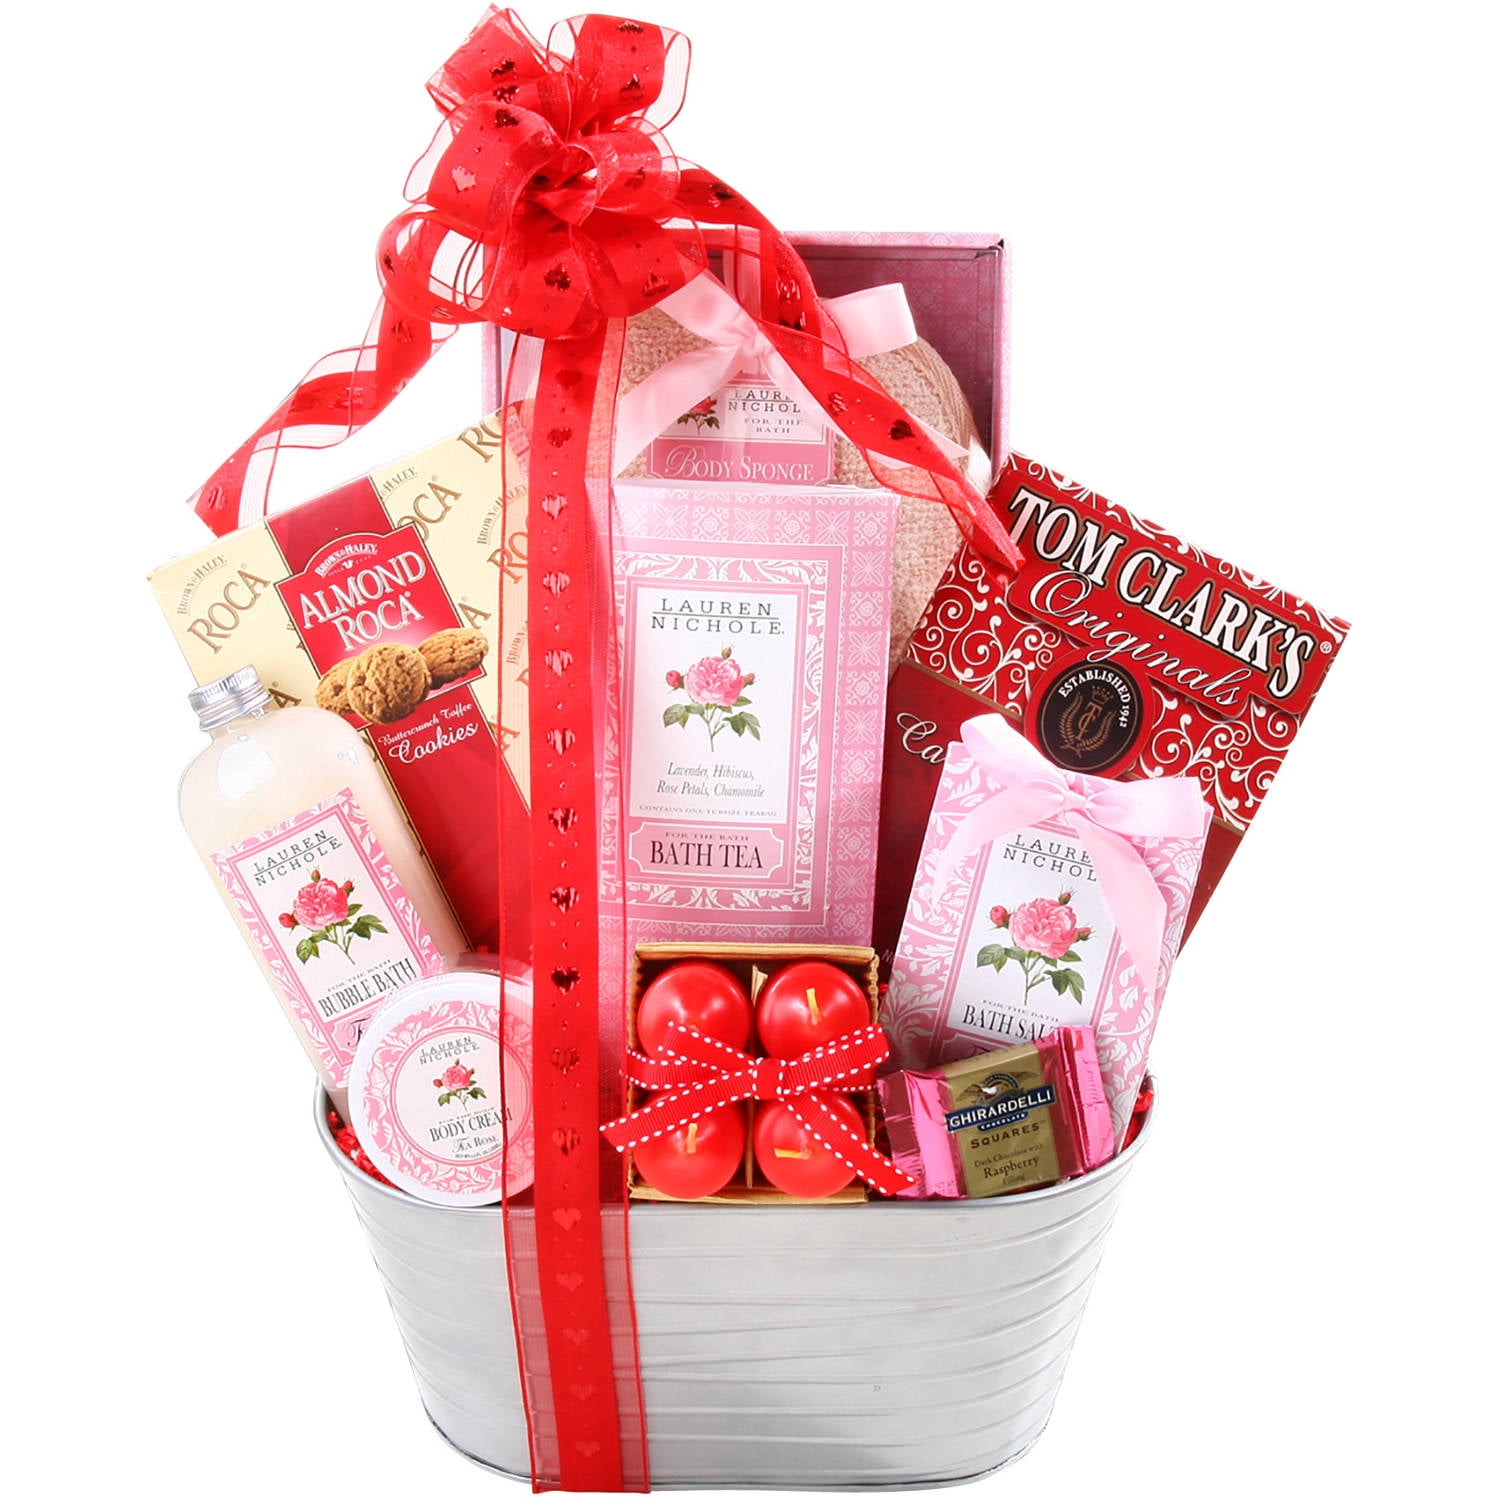 Desert Rose Valentine Gift Basket in Saint Simons Island, GA - A